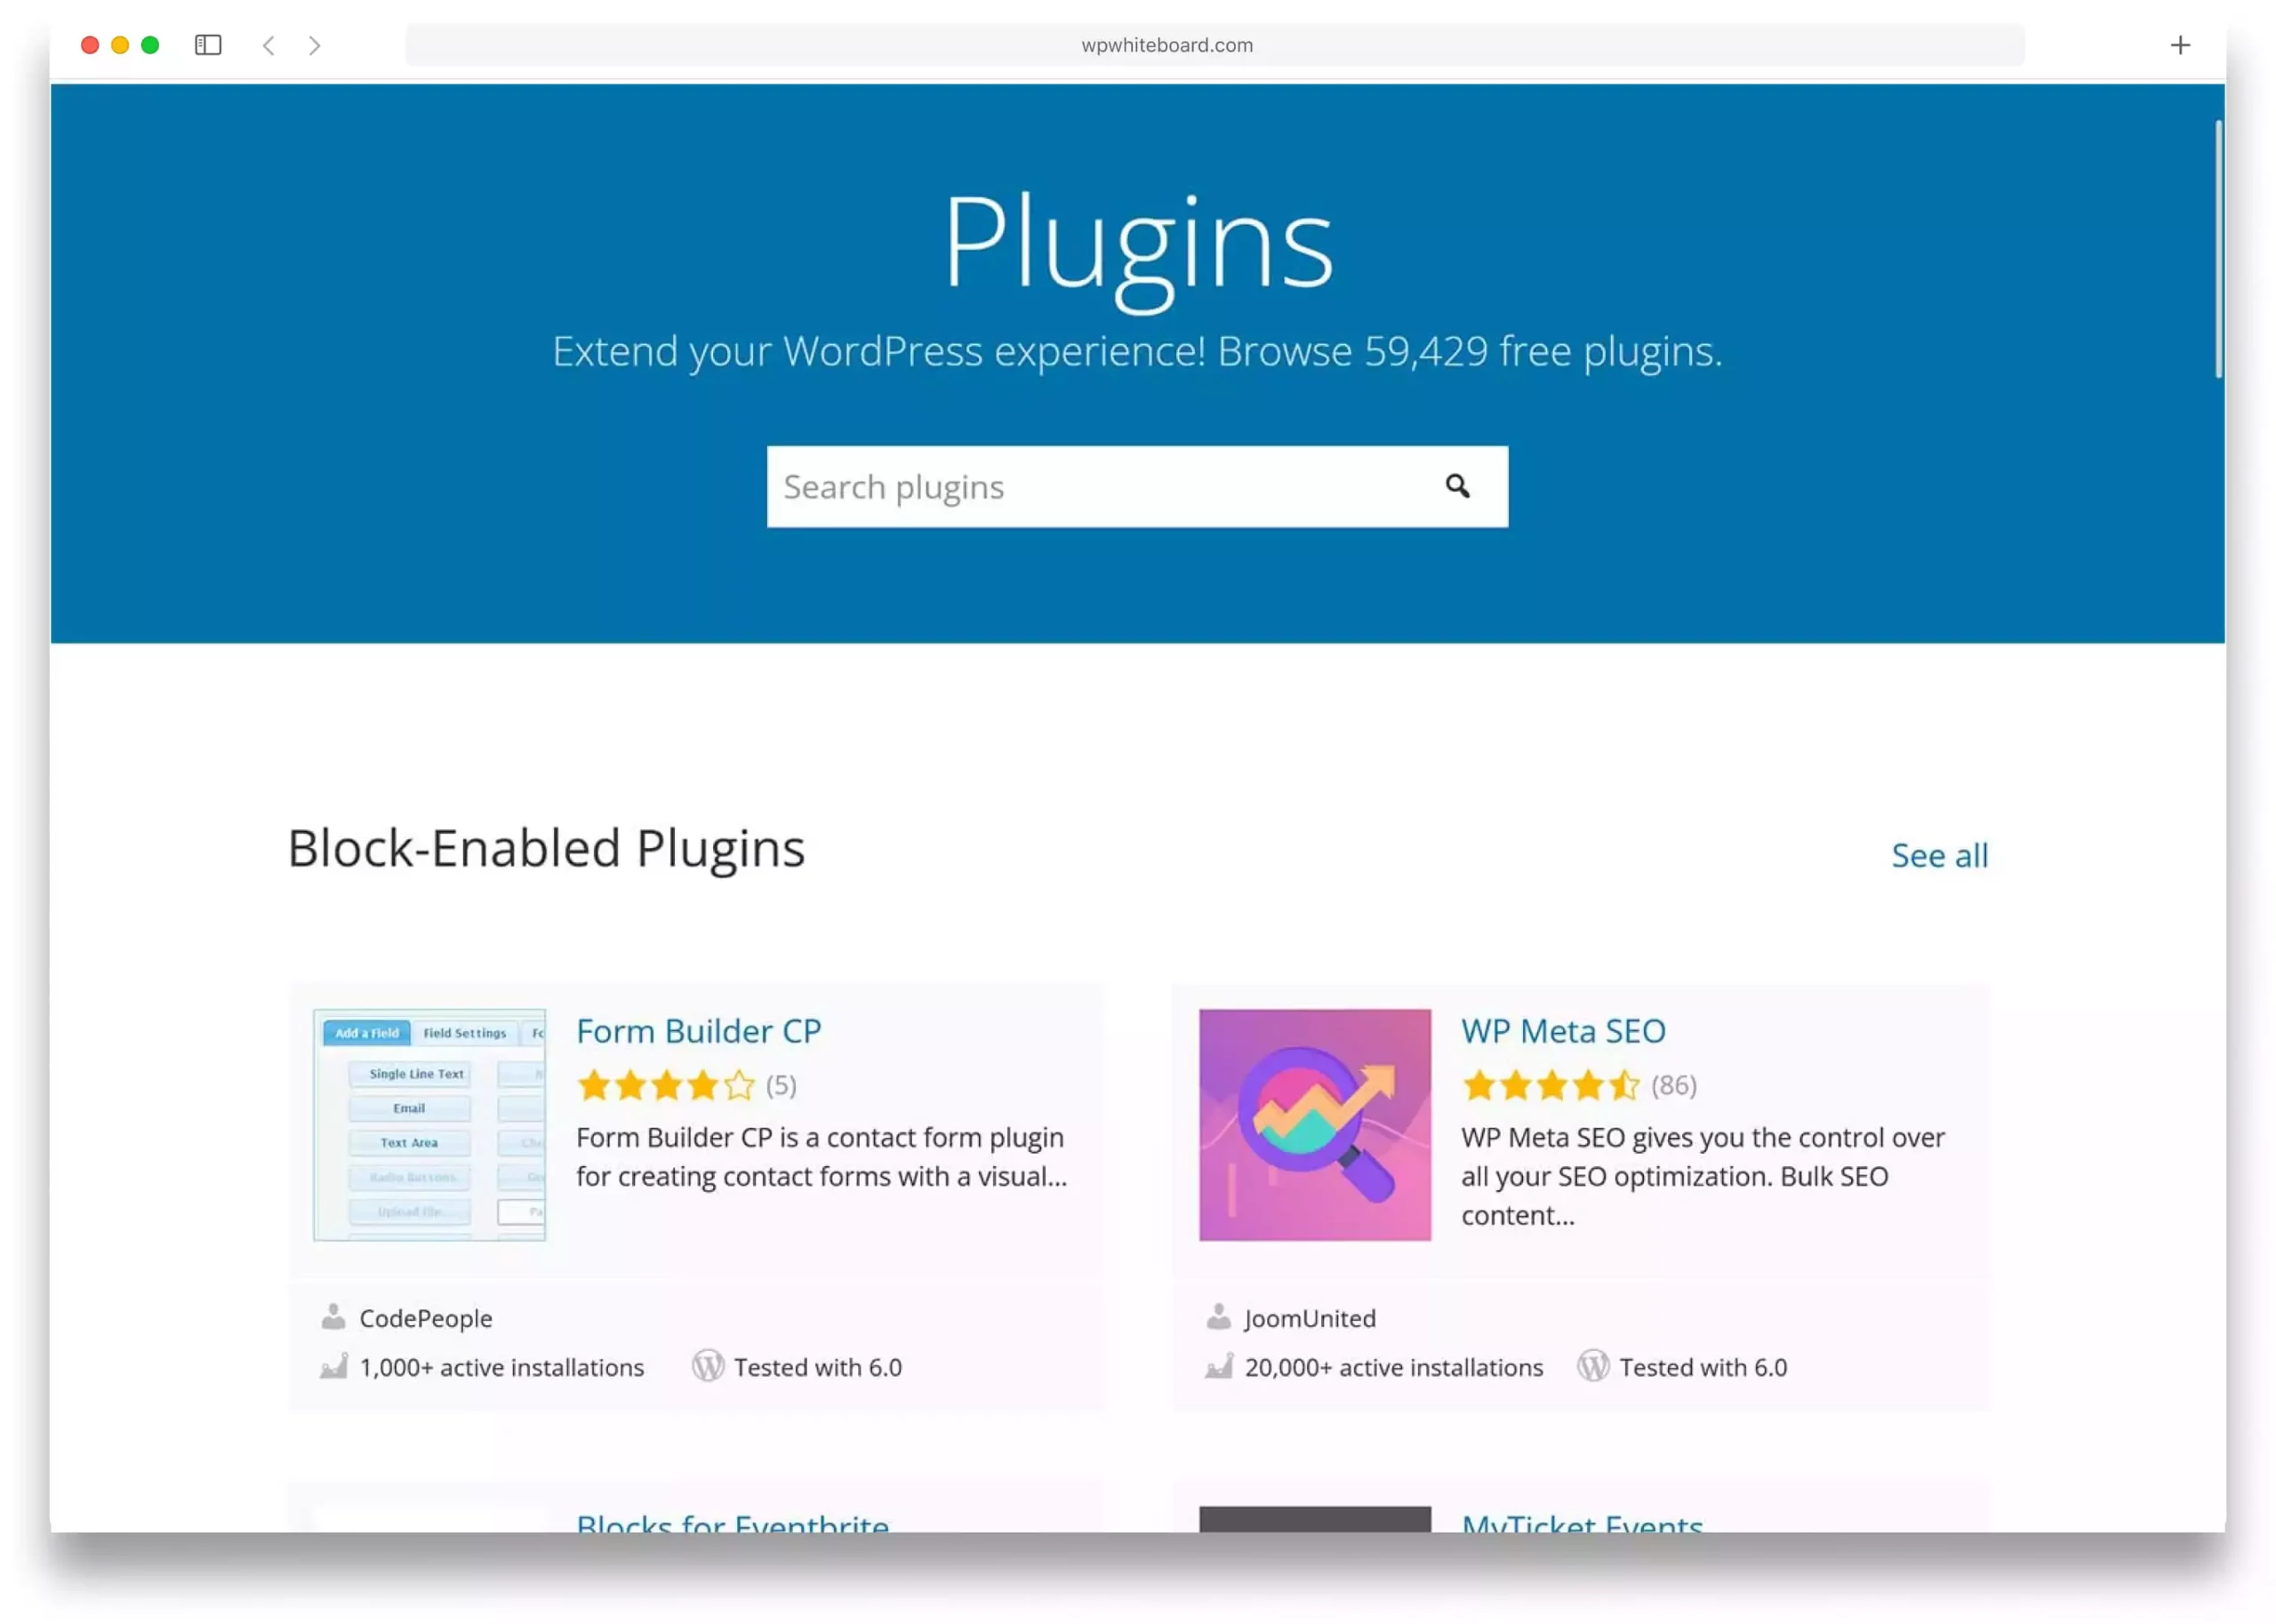 Image: Landing Page of Plugins on WordPress.org